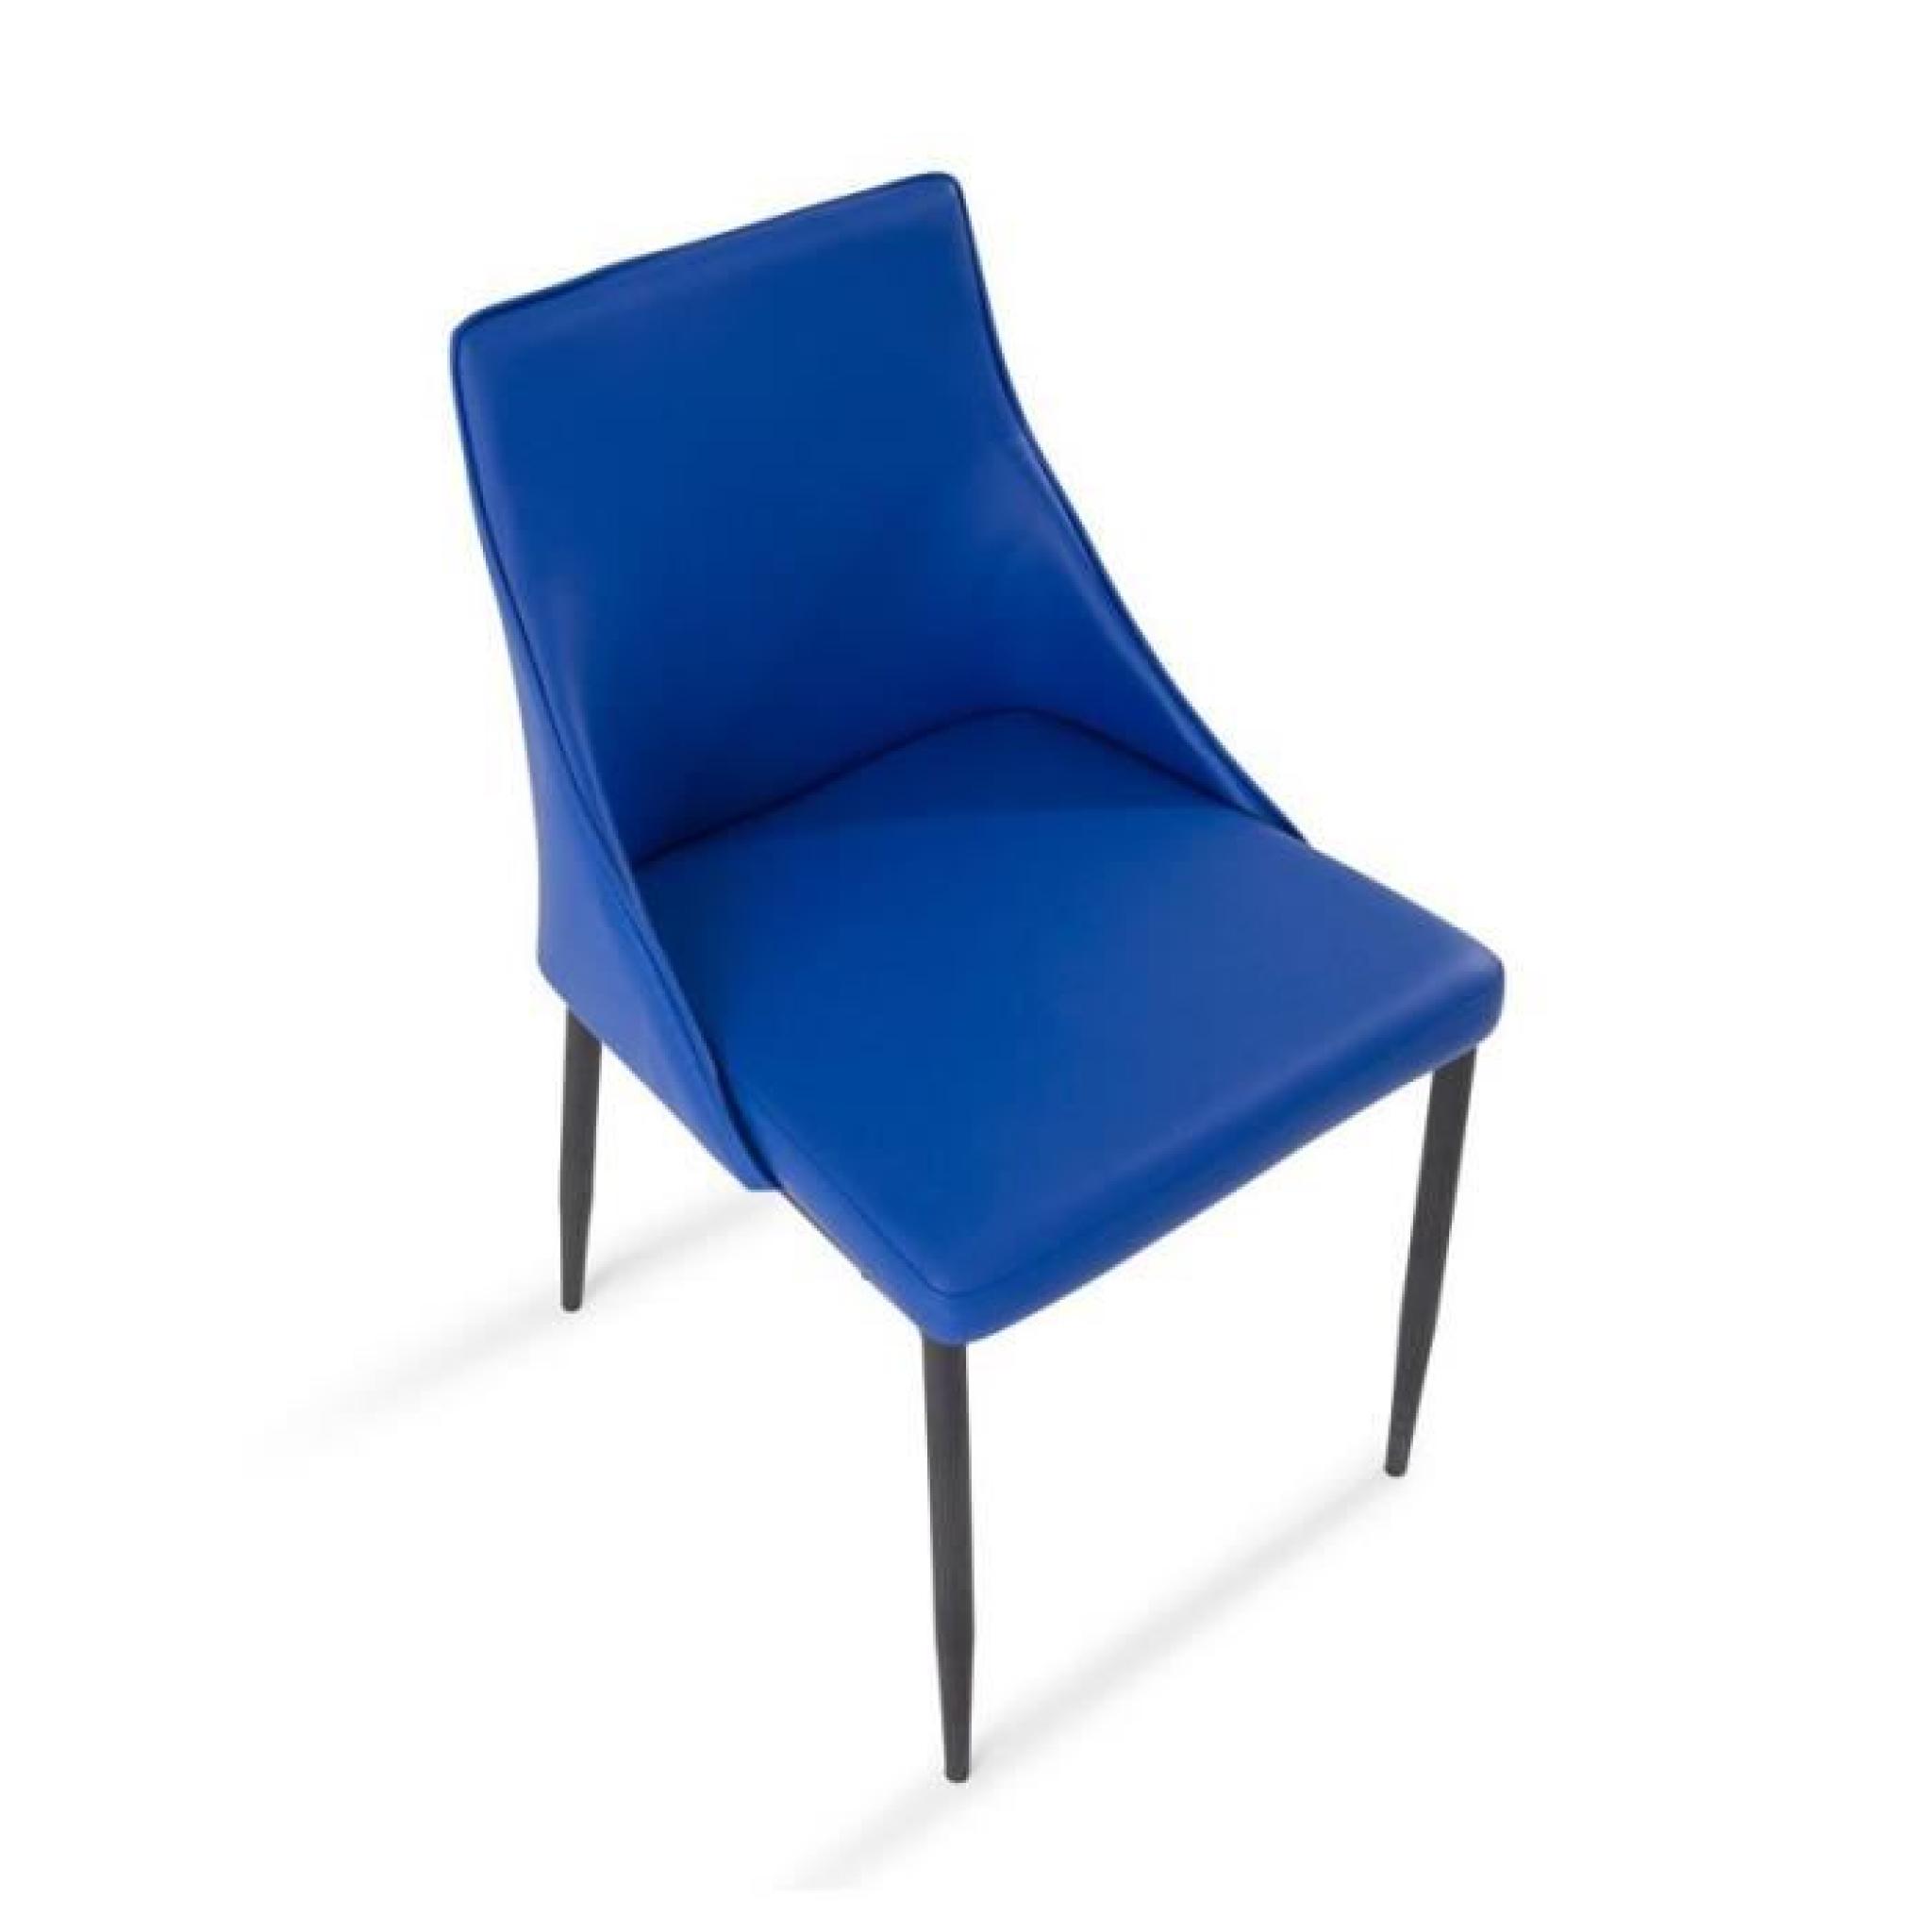 Duo de chaises PU Bleu - GOYA pas cher